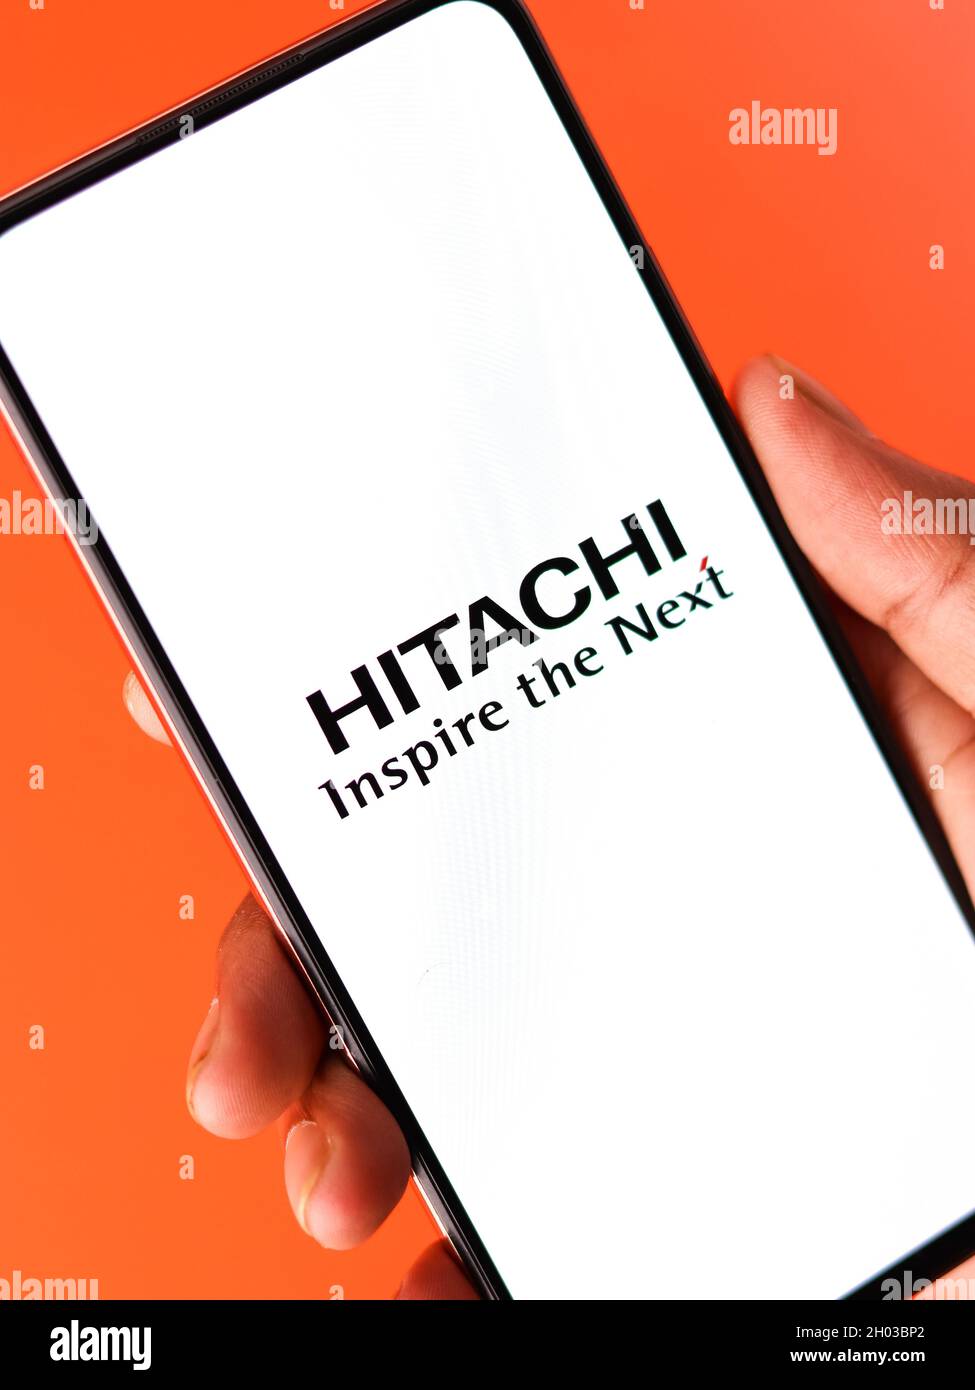 West Bangal, India - October 09, 2021 : Hitachi logo on phone screen stock  image Stock Photo - Alamy